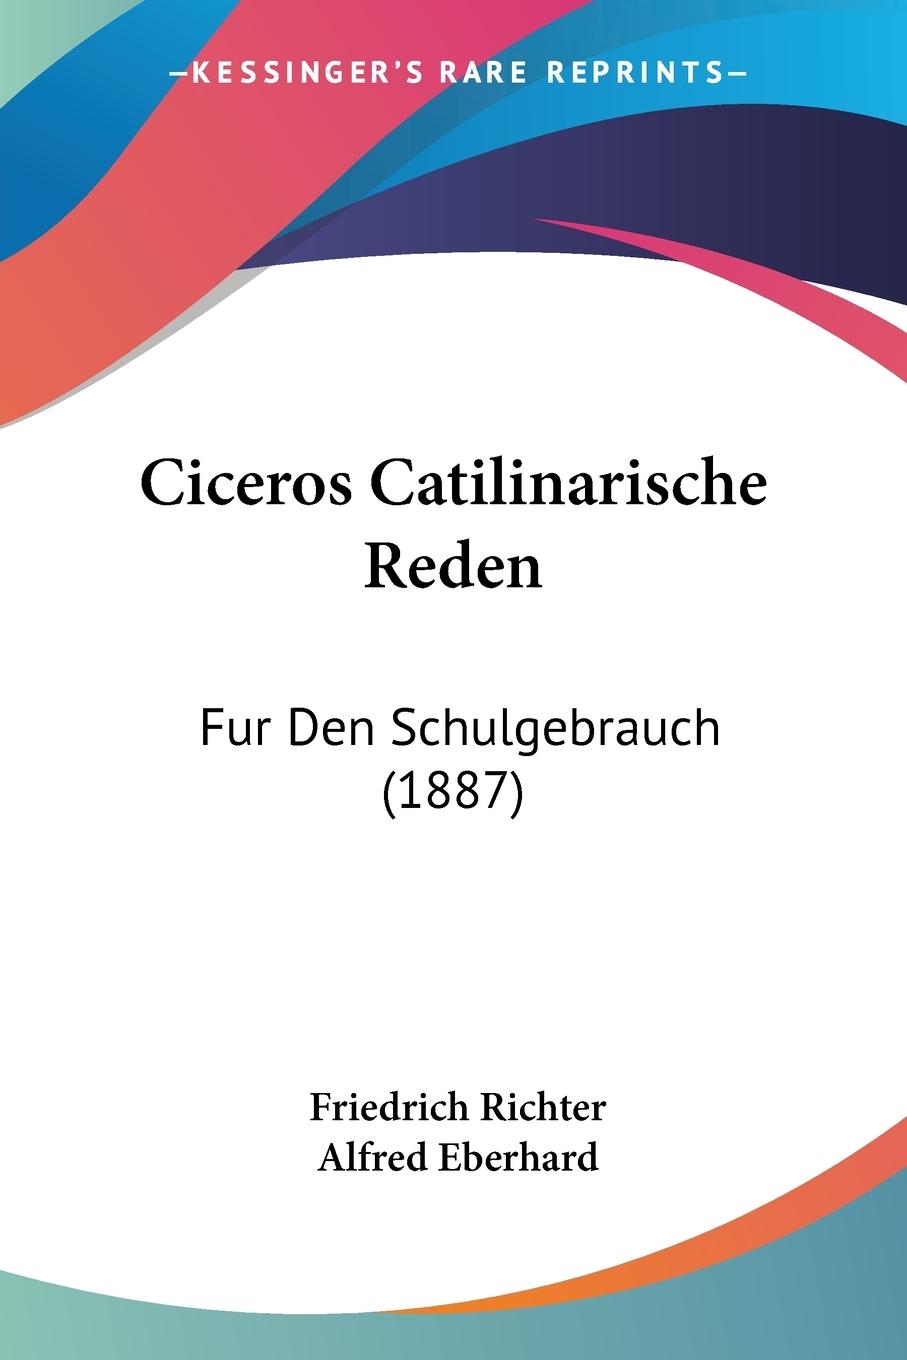 Ciceros Catilinarische Reden / Fur Den Schulgebrauch (1887) / Friedrich Richter / Taschenbuch / Paperback / Deutsch / 2010 / Kessinger Publishing, LLC / EAN 9781160336635 - Richter, Friedrich